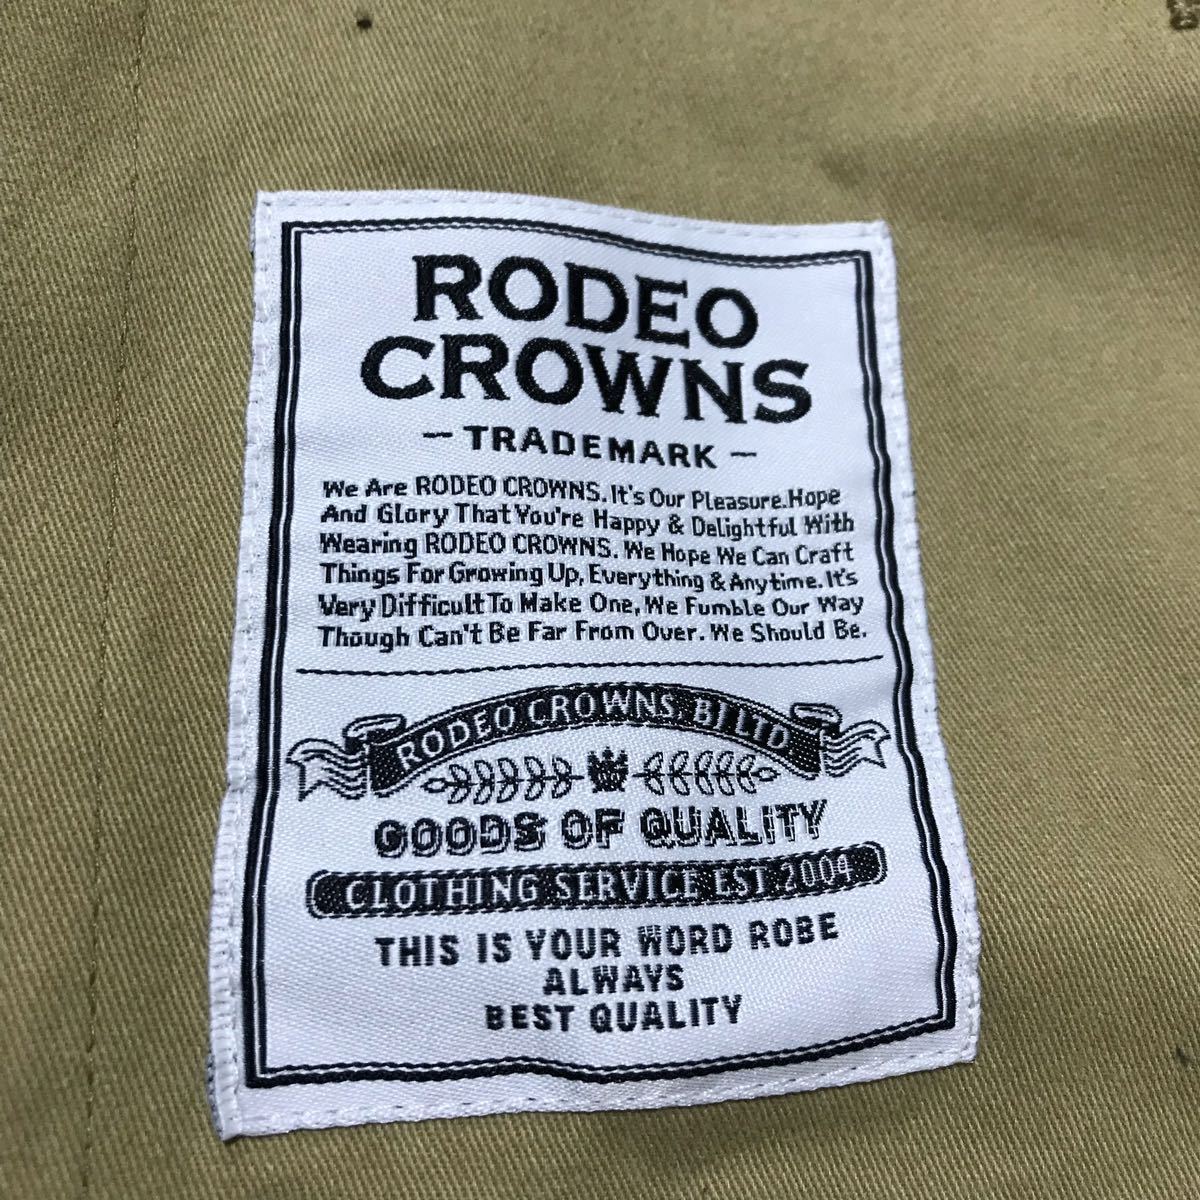 RODEO CROWNS тренчкот 013-6 бежевый женский S Rodeo Crowns пальто хлопок традиционный рисунок 